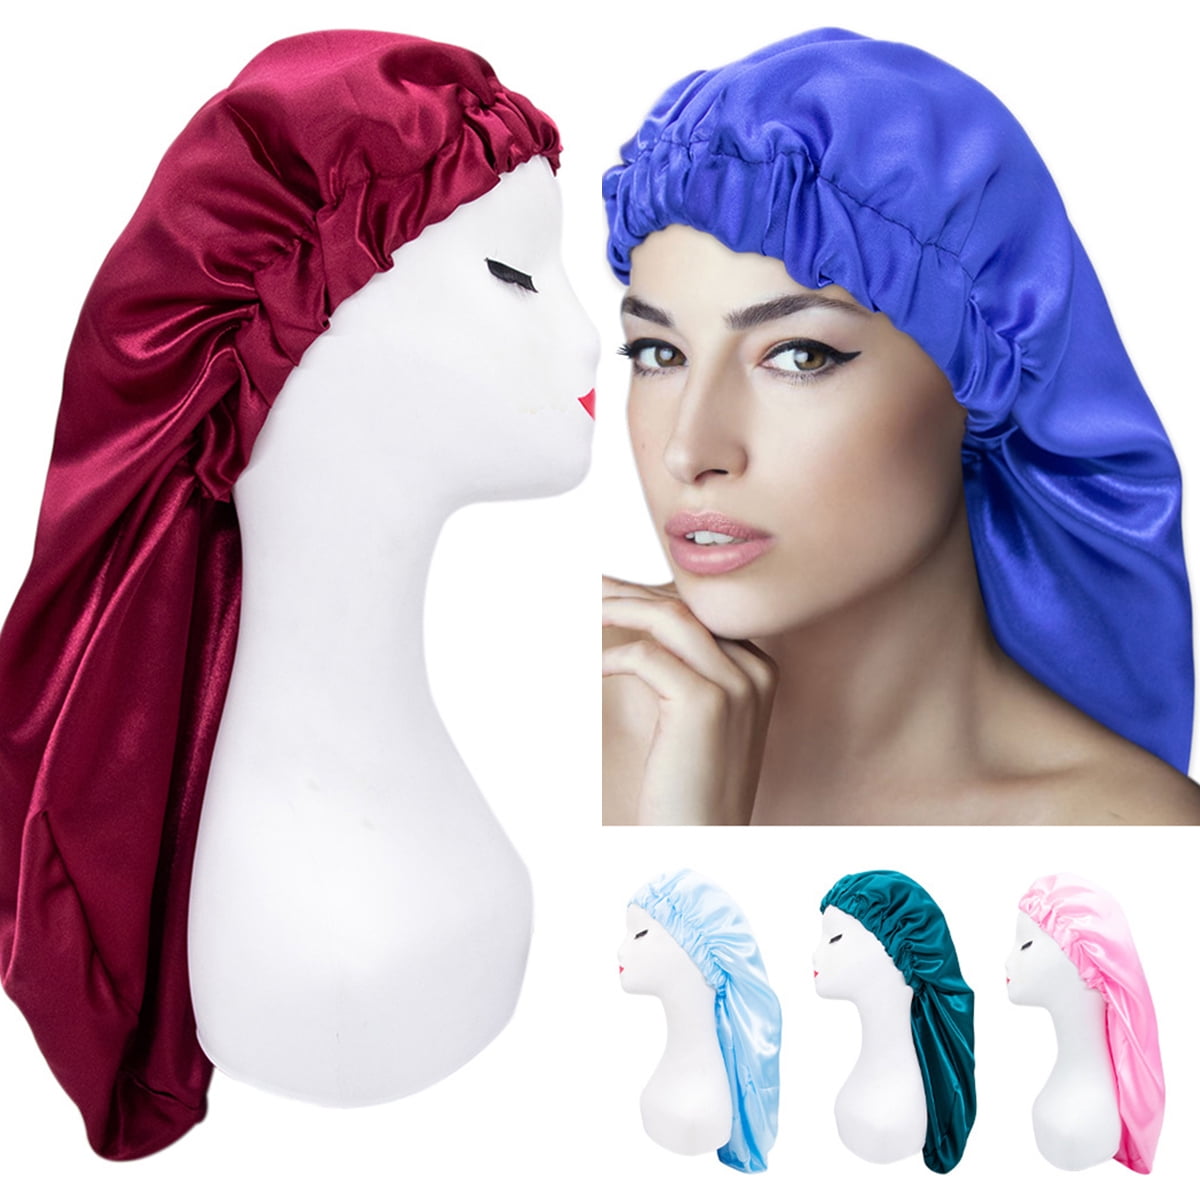 4 PCS Satin Bonnet for Sleeping,Hair Bonnets for Black Women,Hair Cap for  Sleeping,Bonnets for Teen Girls,Bonet Pack B